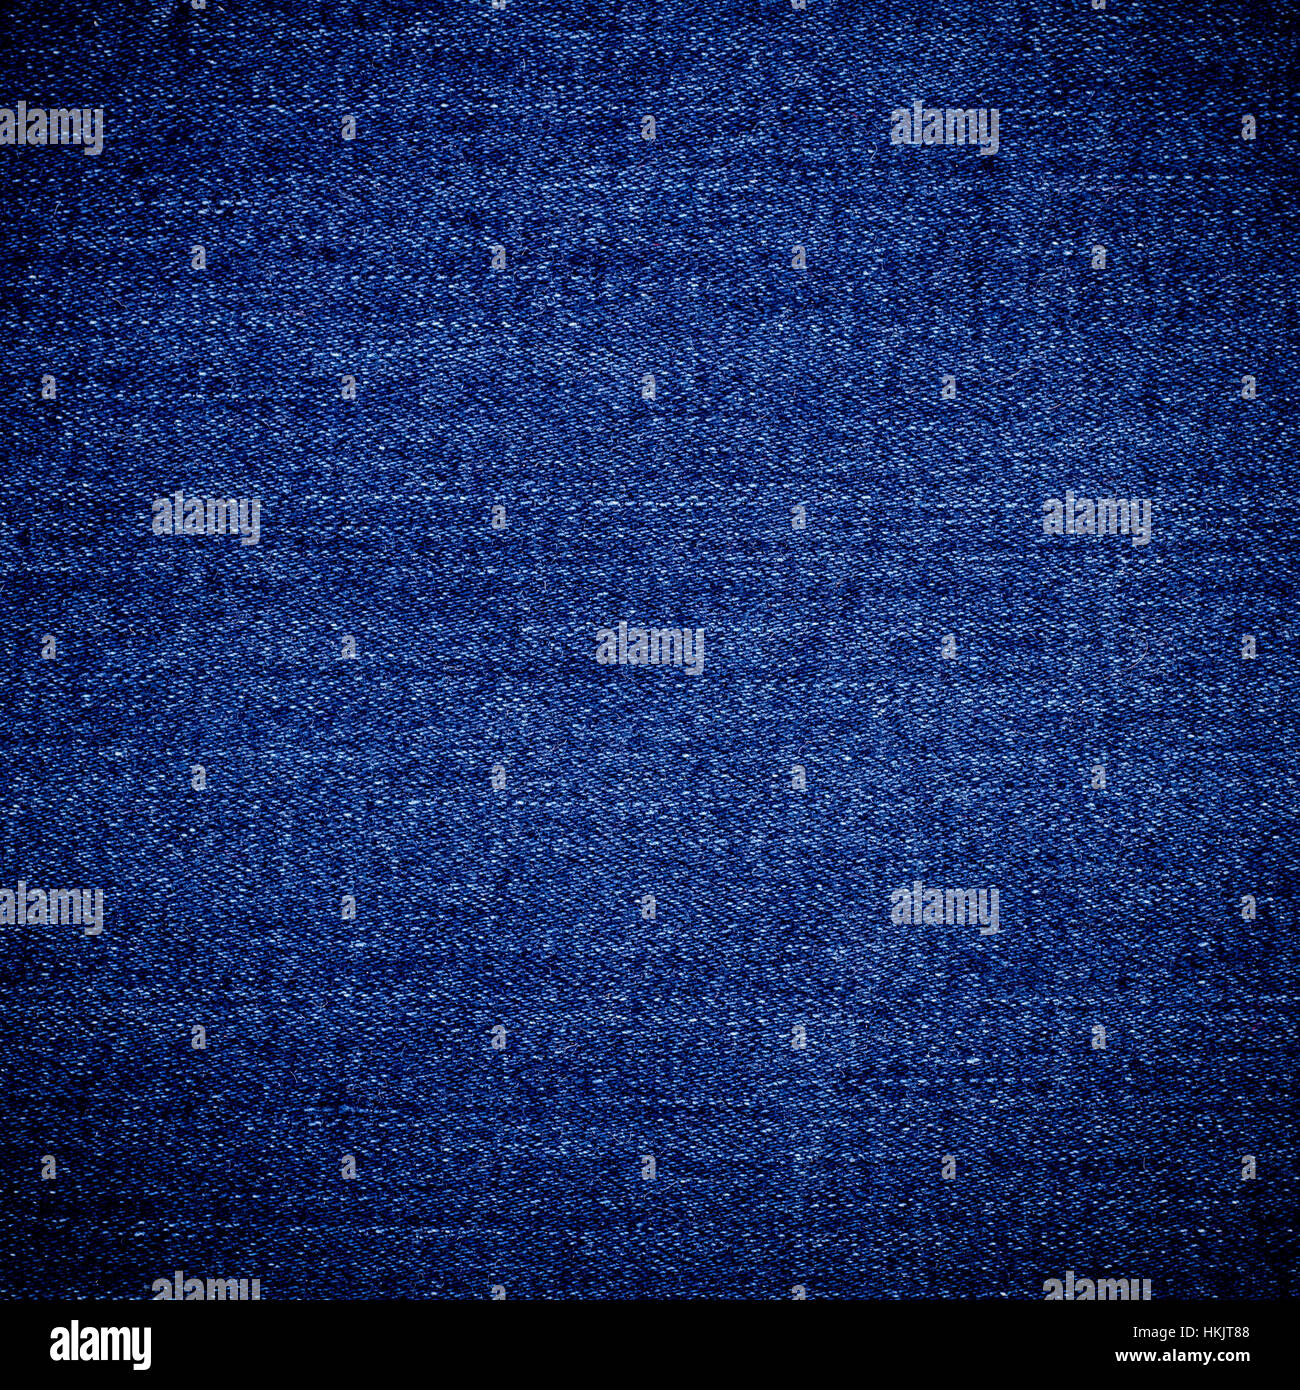 empty blue indigo jeans denim texture background design pattern Stock Photo